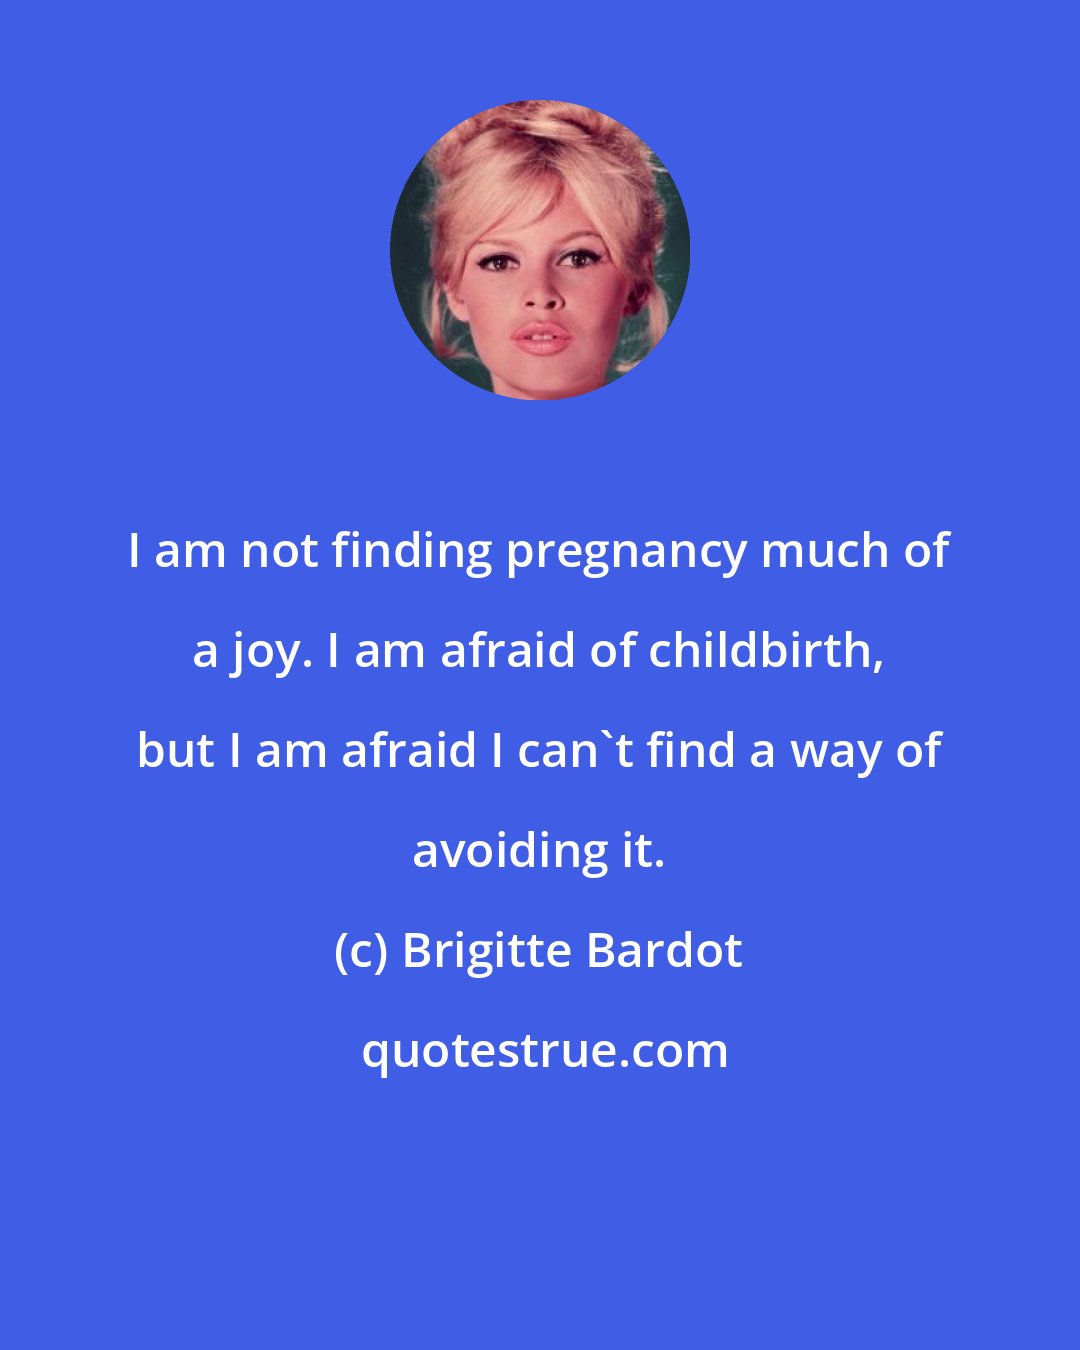 Brigitte Bardot: I am not finding pregnancy much of a joy. I am afraid of childbirth, but I am afraid I can't find a way of avoiding it.